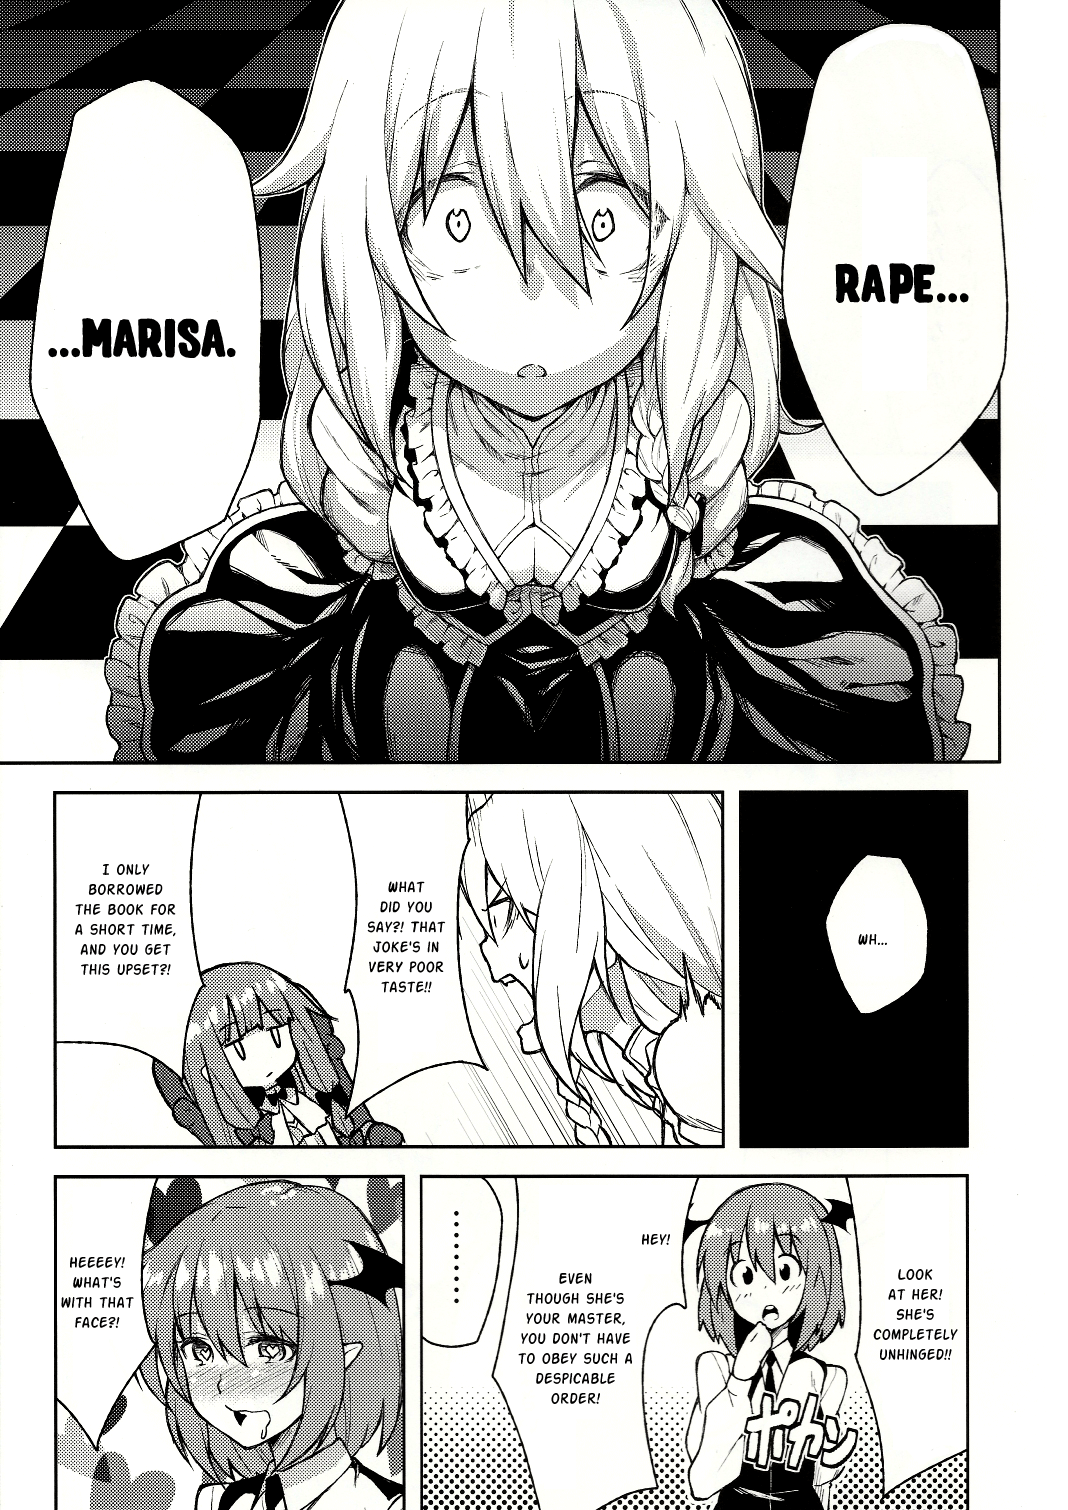 Mariho hentai manga picture 4